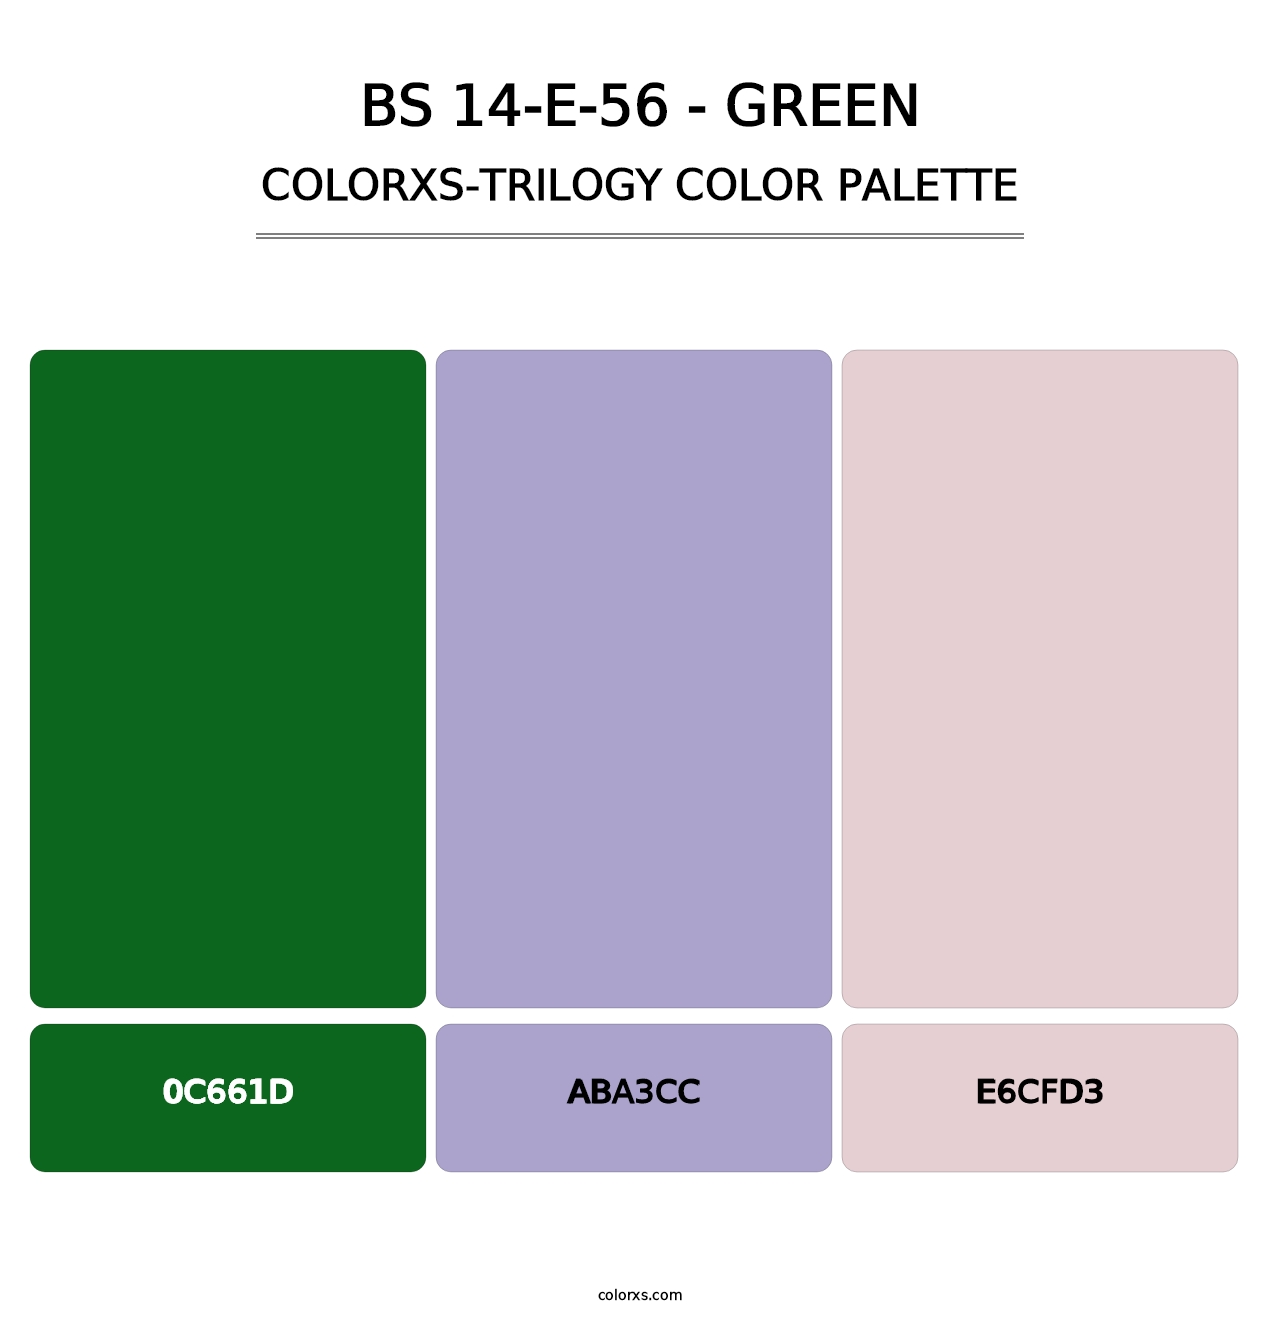 BS 14-E-56 - Green - Colorxs Trilogy Palette